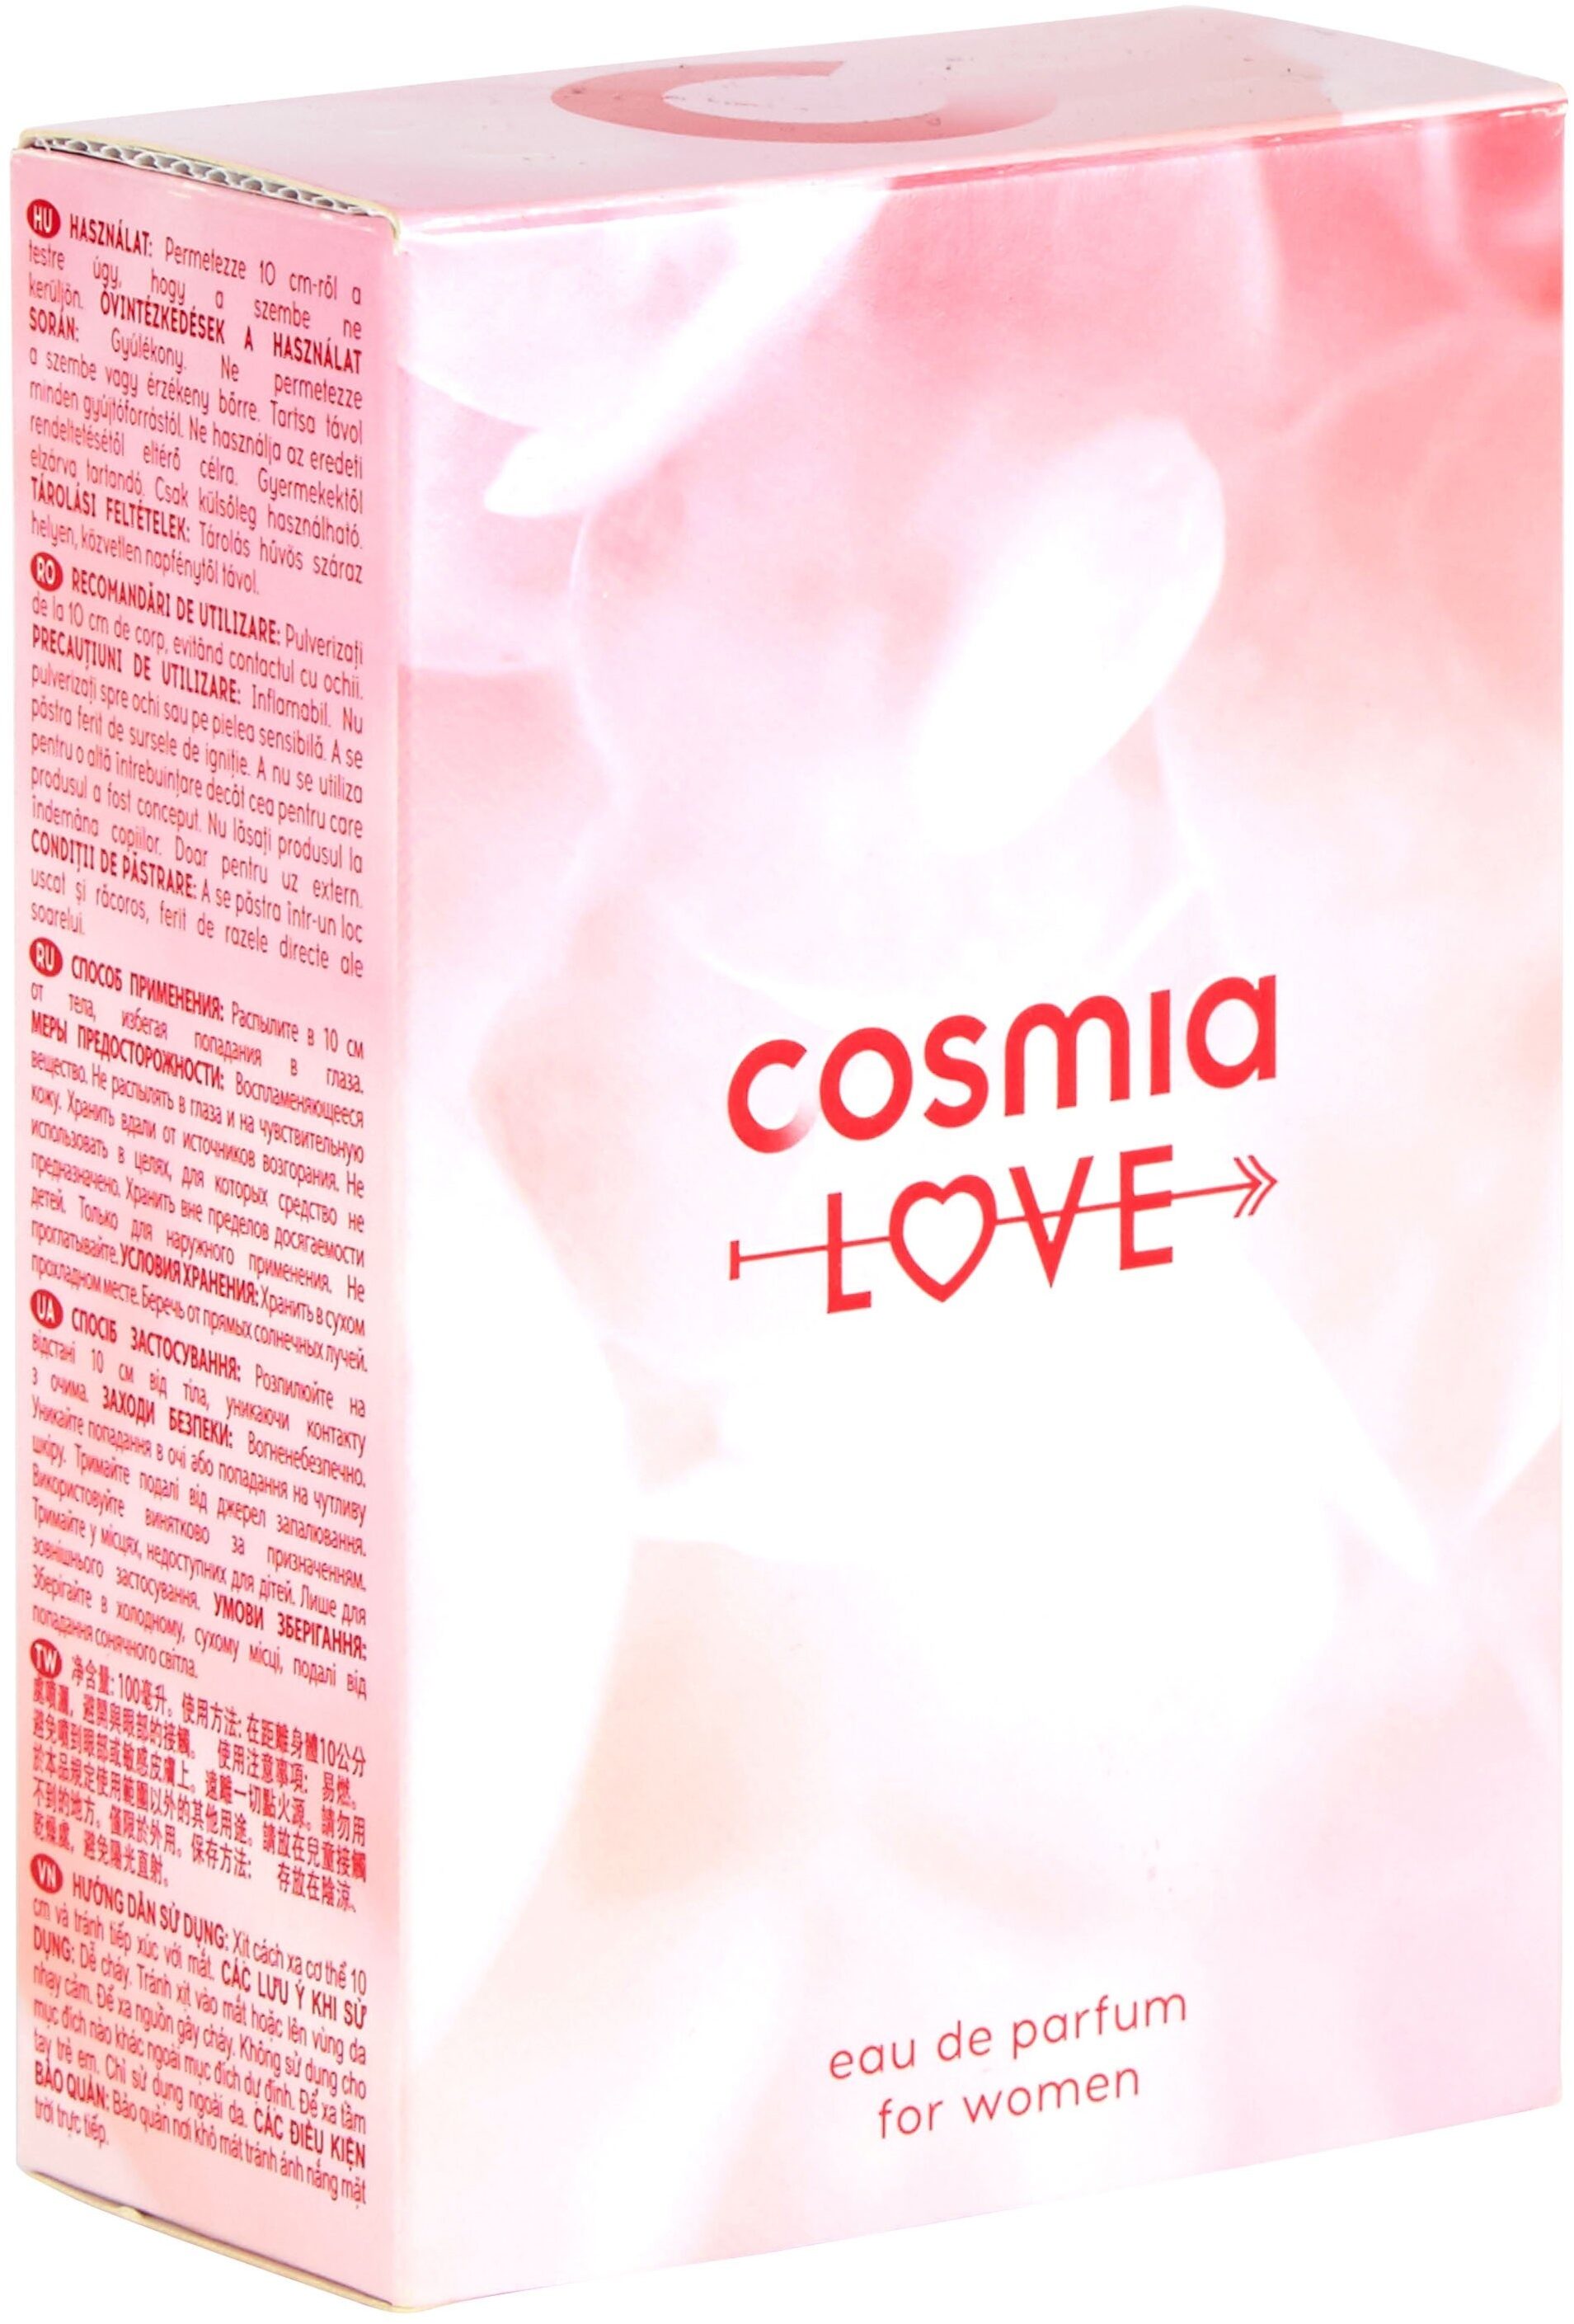 Cosmia - eau de parfum - cosmia amour - pour femme - 100 ml - Produkt - fr